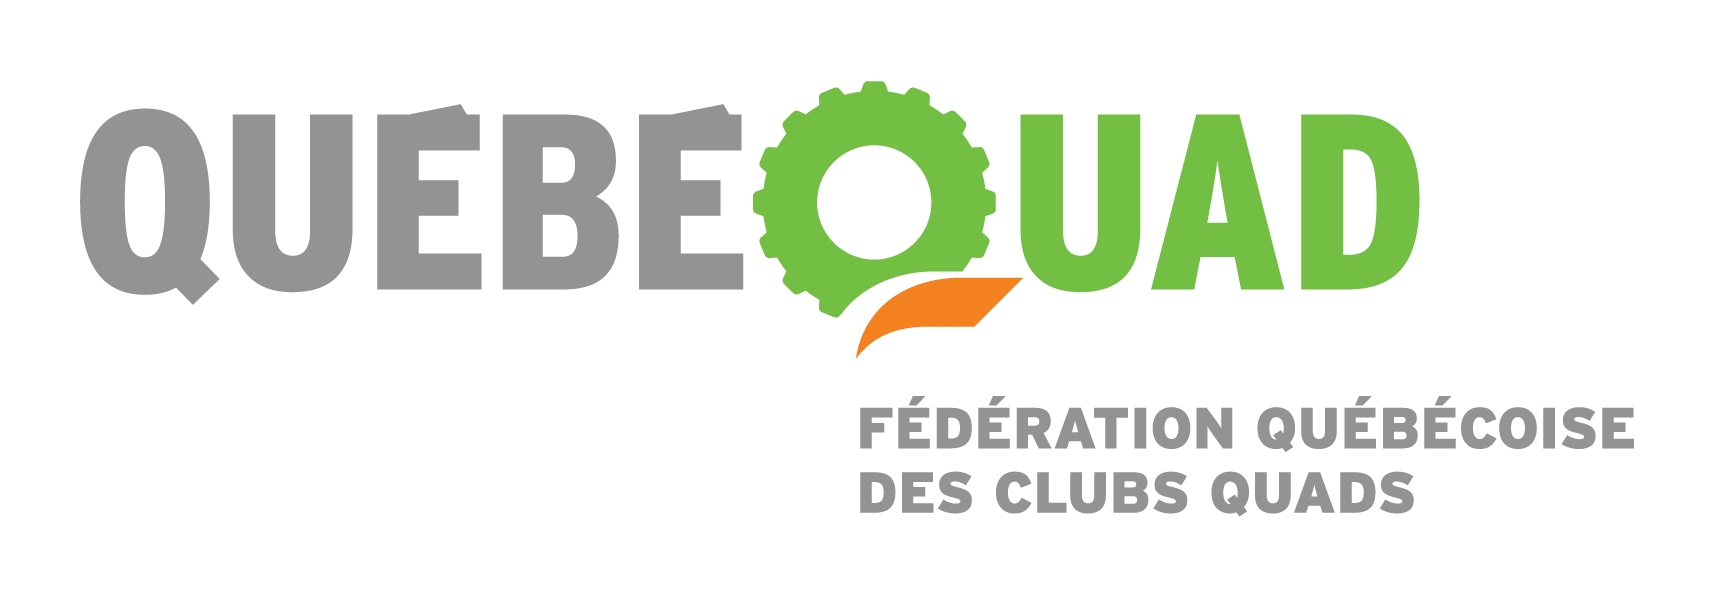 Episode 1 Chibougamau - La Fédération Québécoise des Clubs Quads